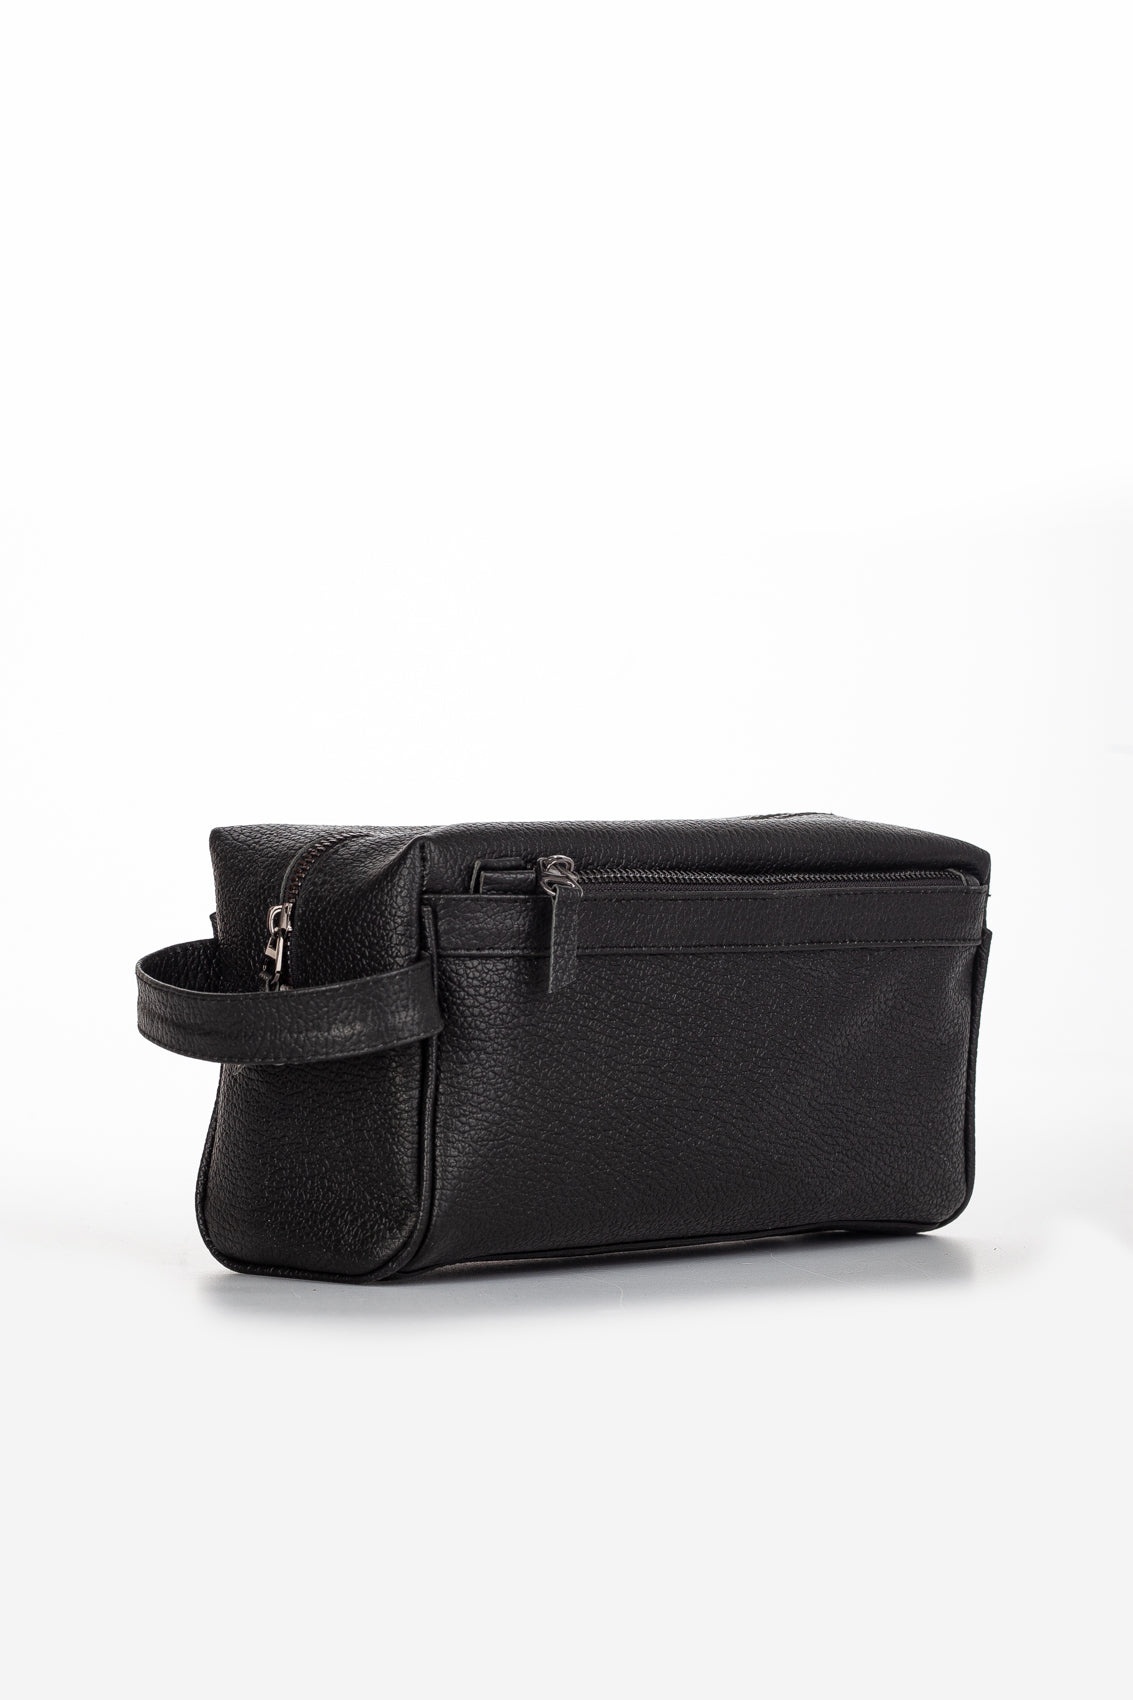 Mare Genuine Leather Unisex Bag